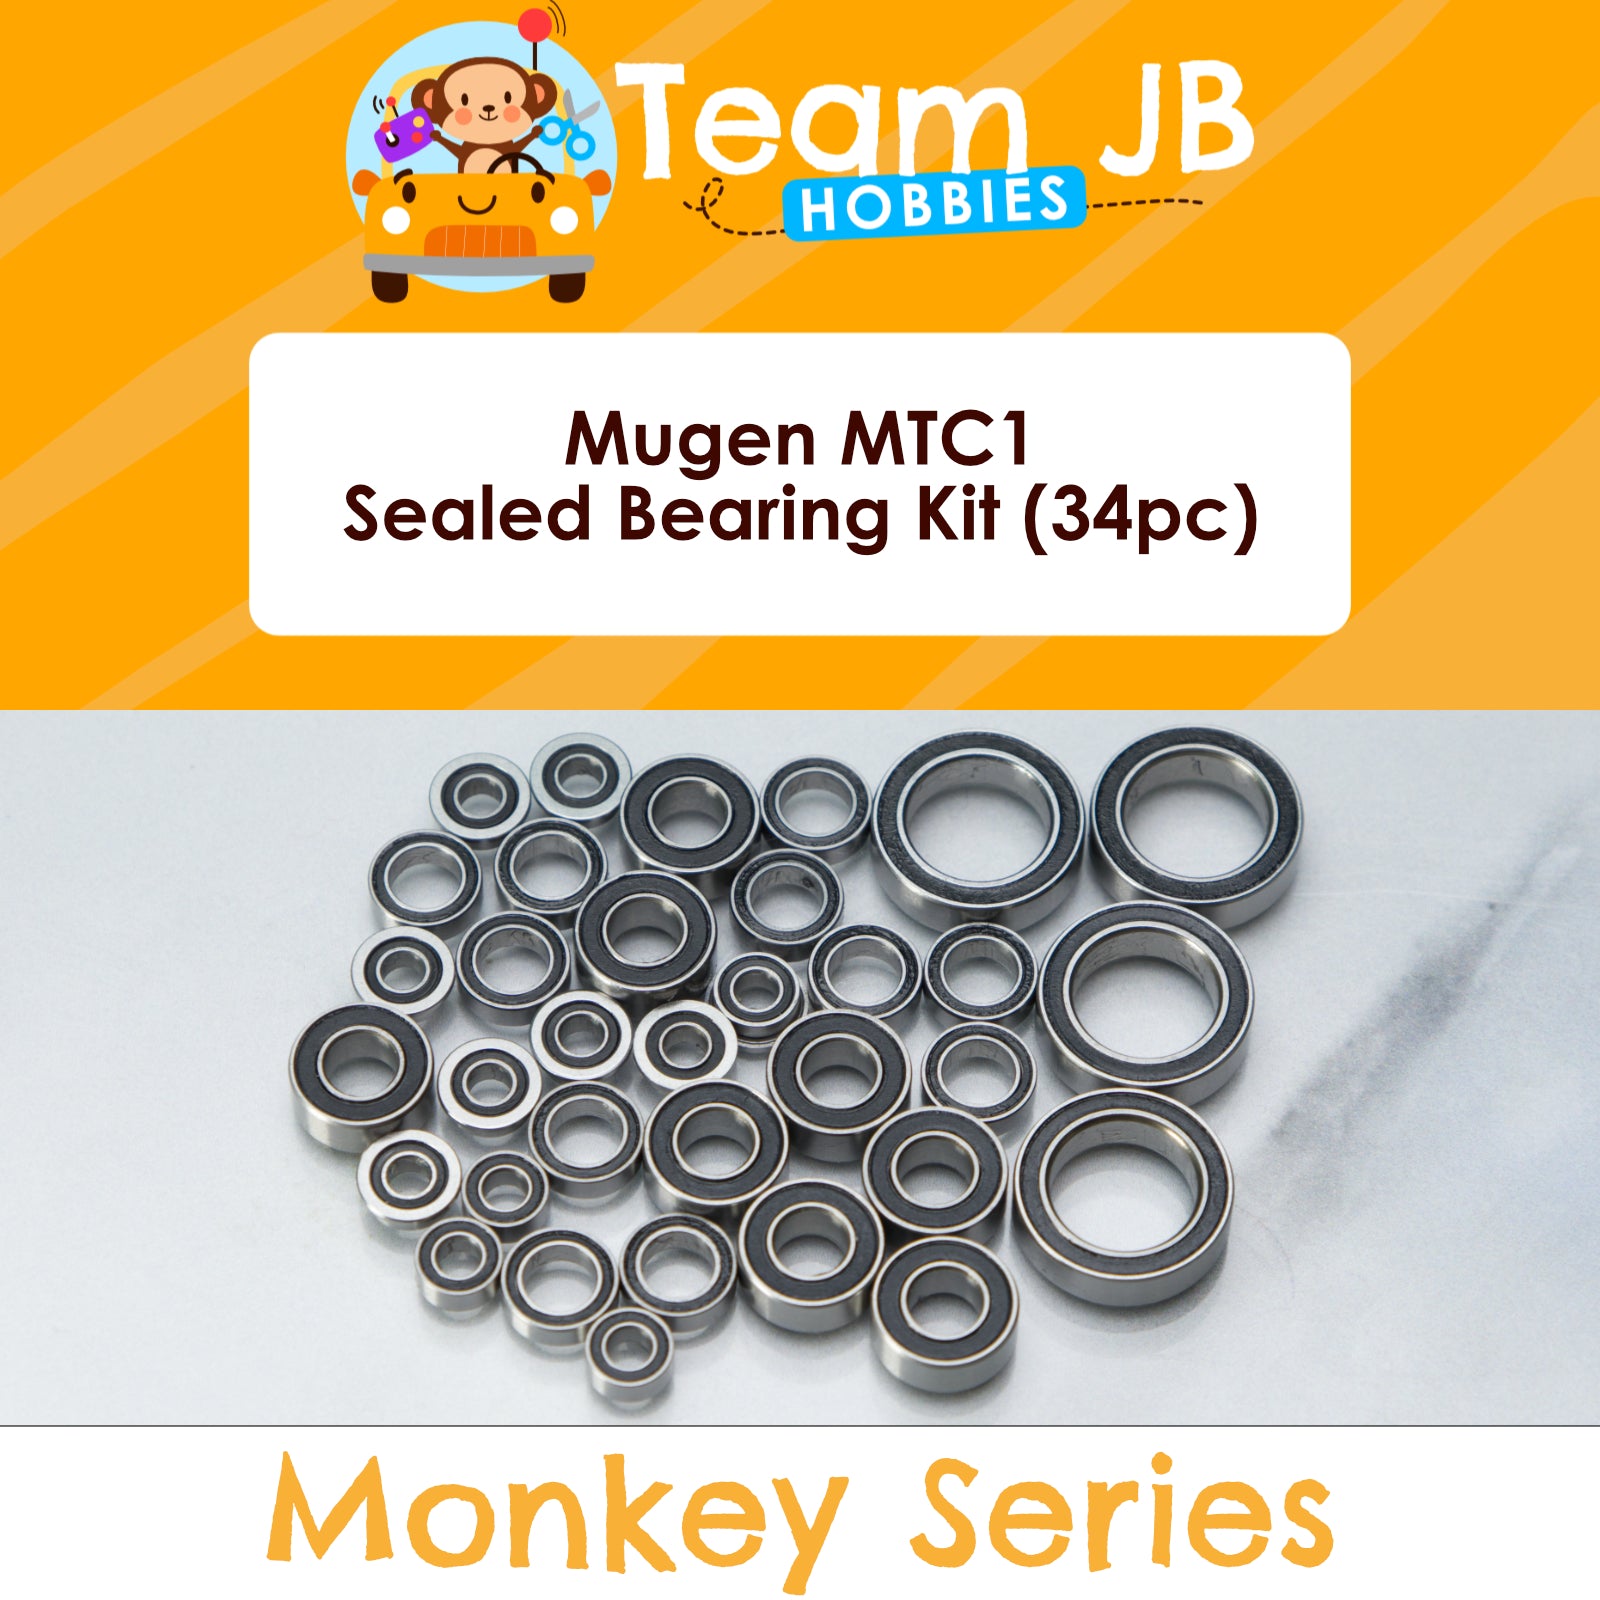 Mugen MTC1 - Sealed Bearing Kit